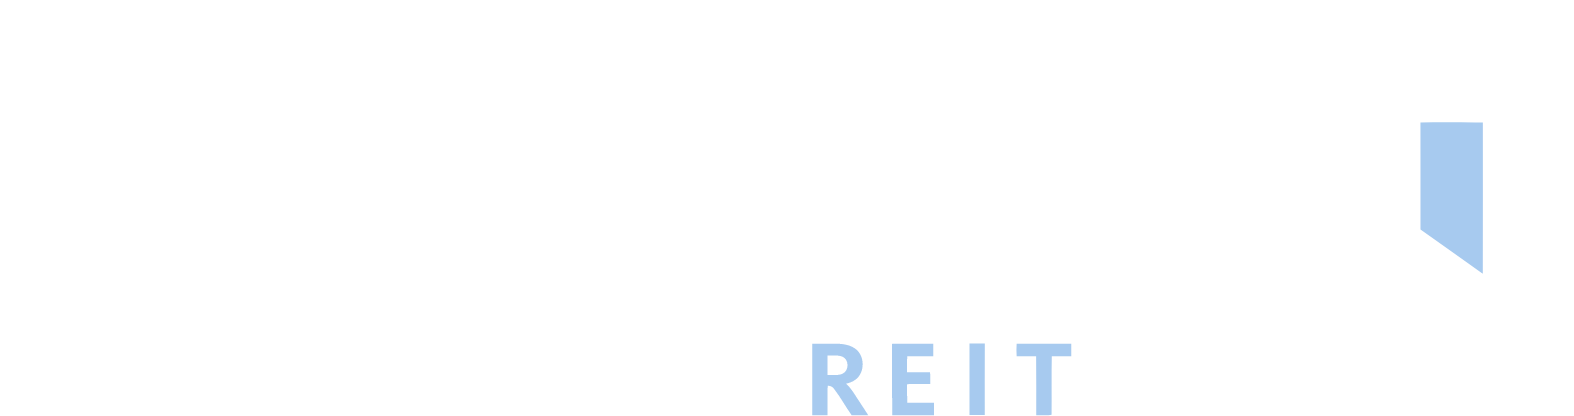 Granite Real Estate Logo groß für dunkle Hintergründe (transparentes PNG)